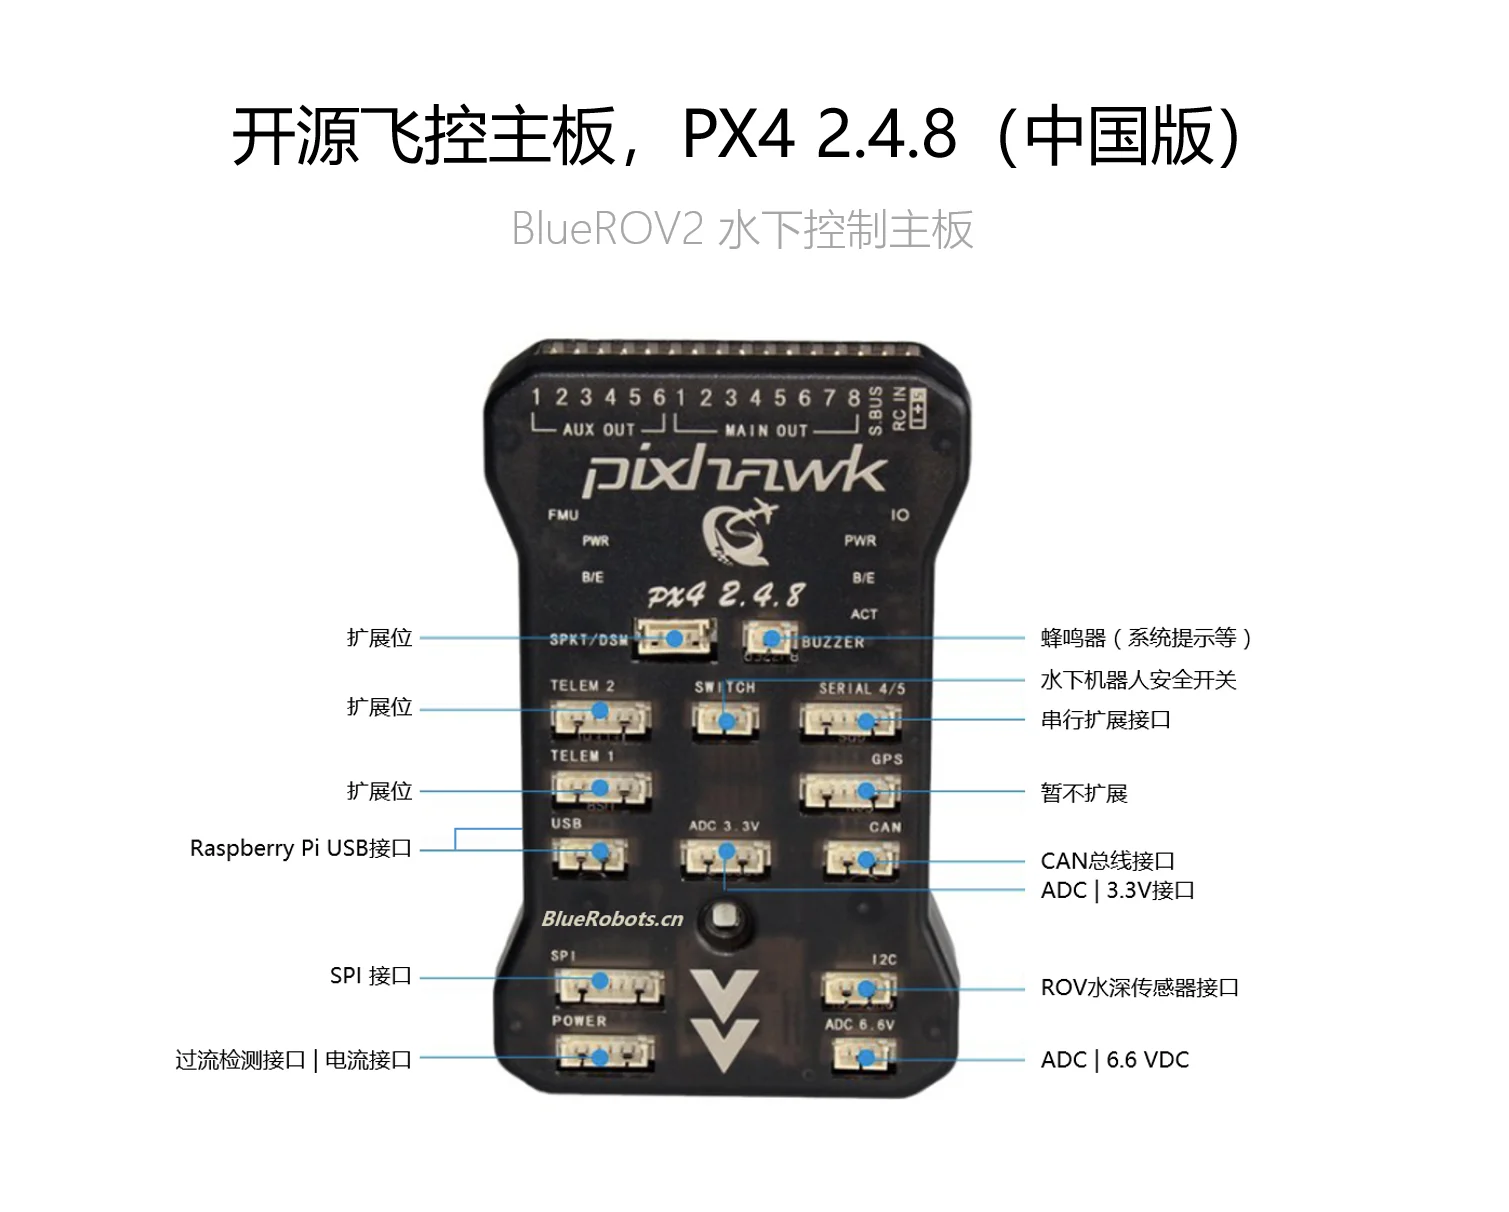 Pixhawk 2.4.8 плата управления полетом основной платы управления ROV для подводных транспортных средств